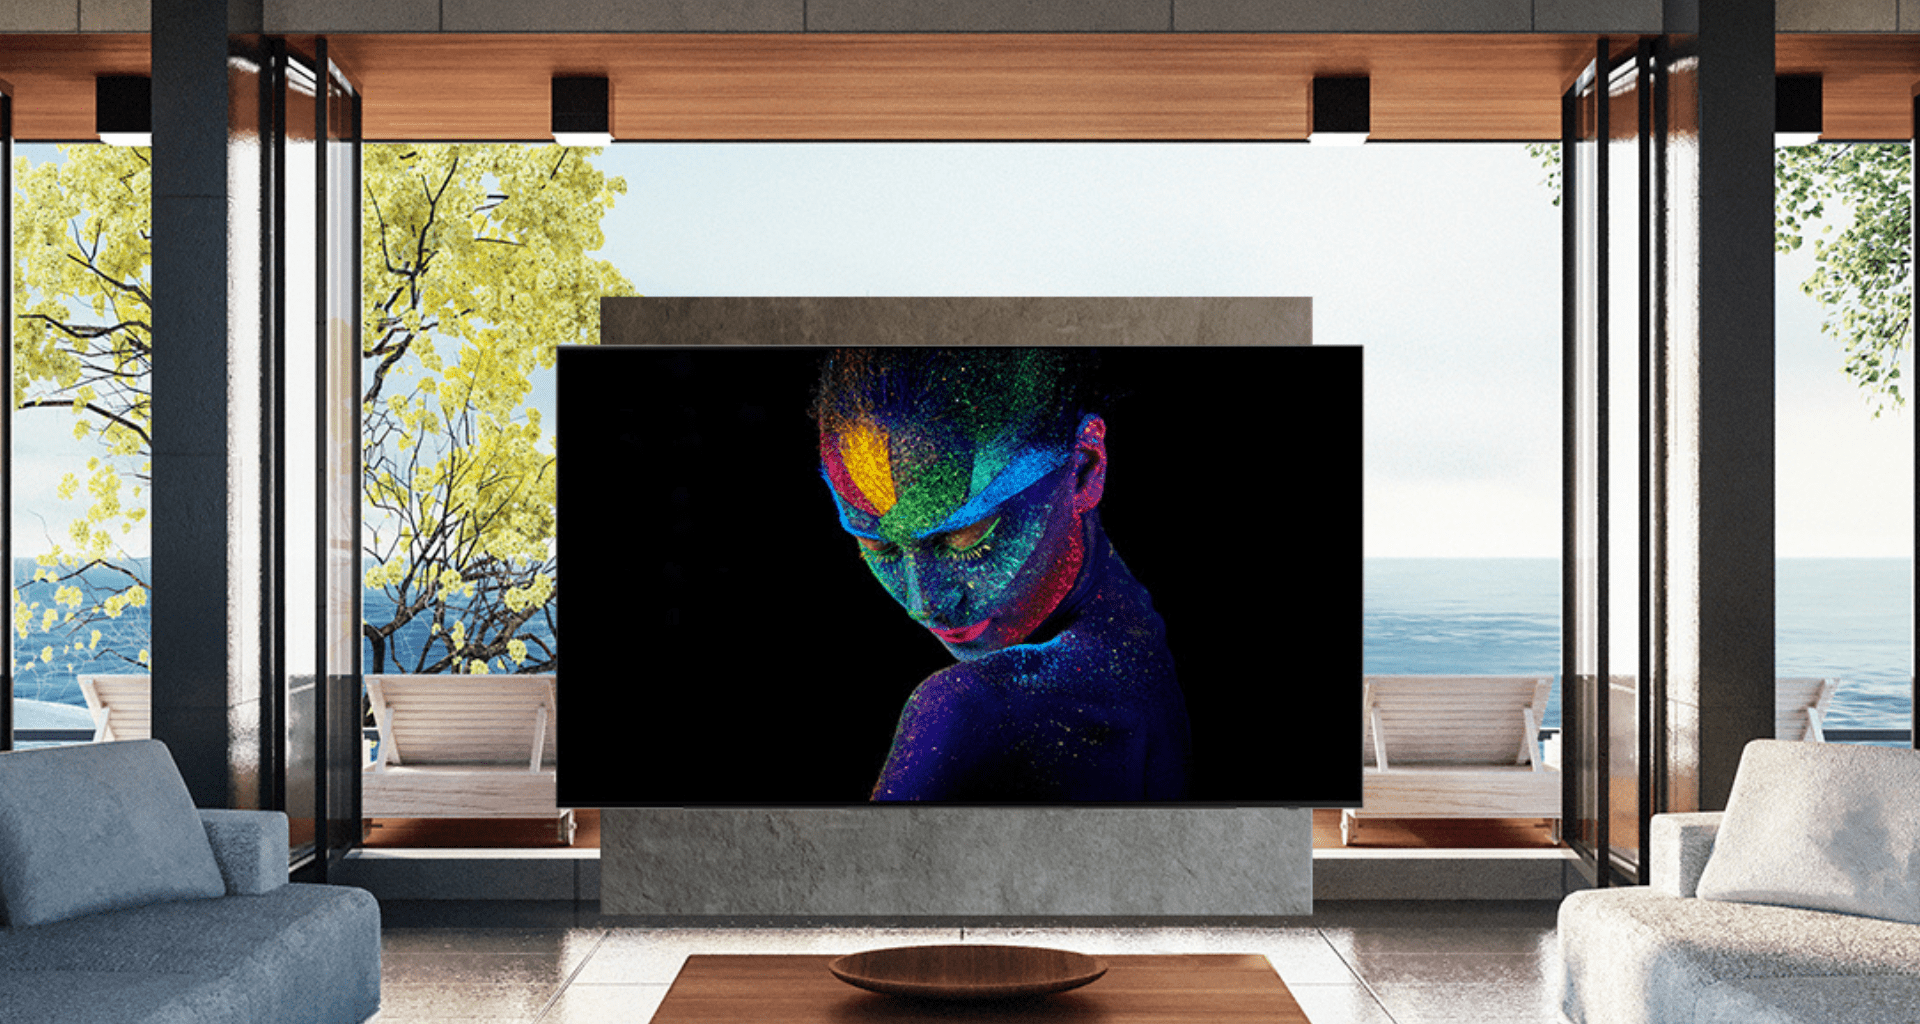 Nova smart tv 8k da samsung